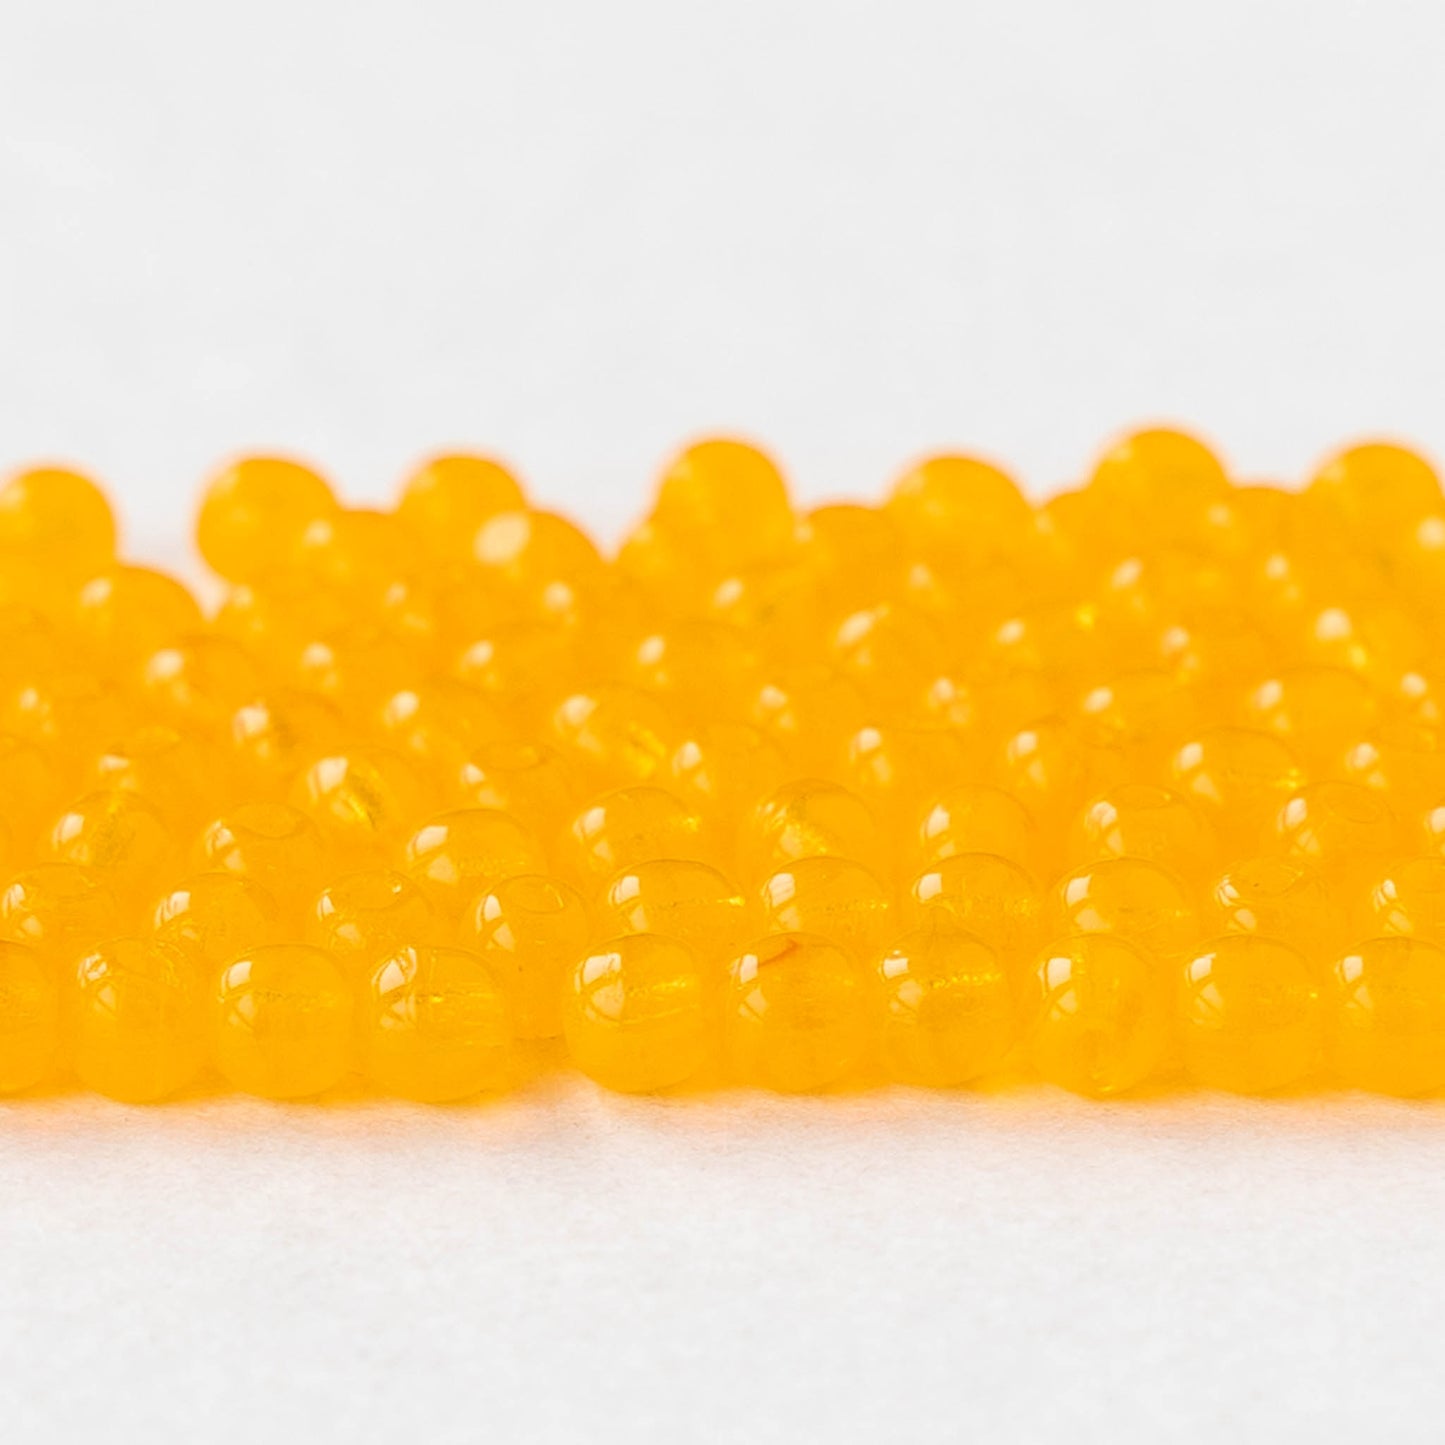 3mm Round Glass Beads - Opaline Yellow - 120 Beads